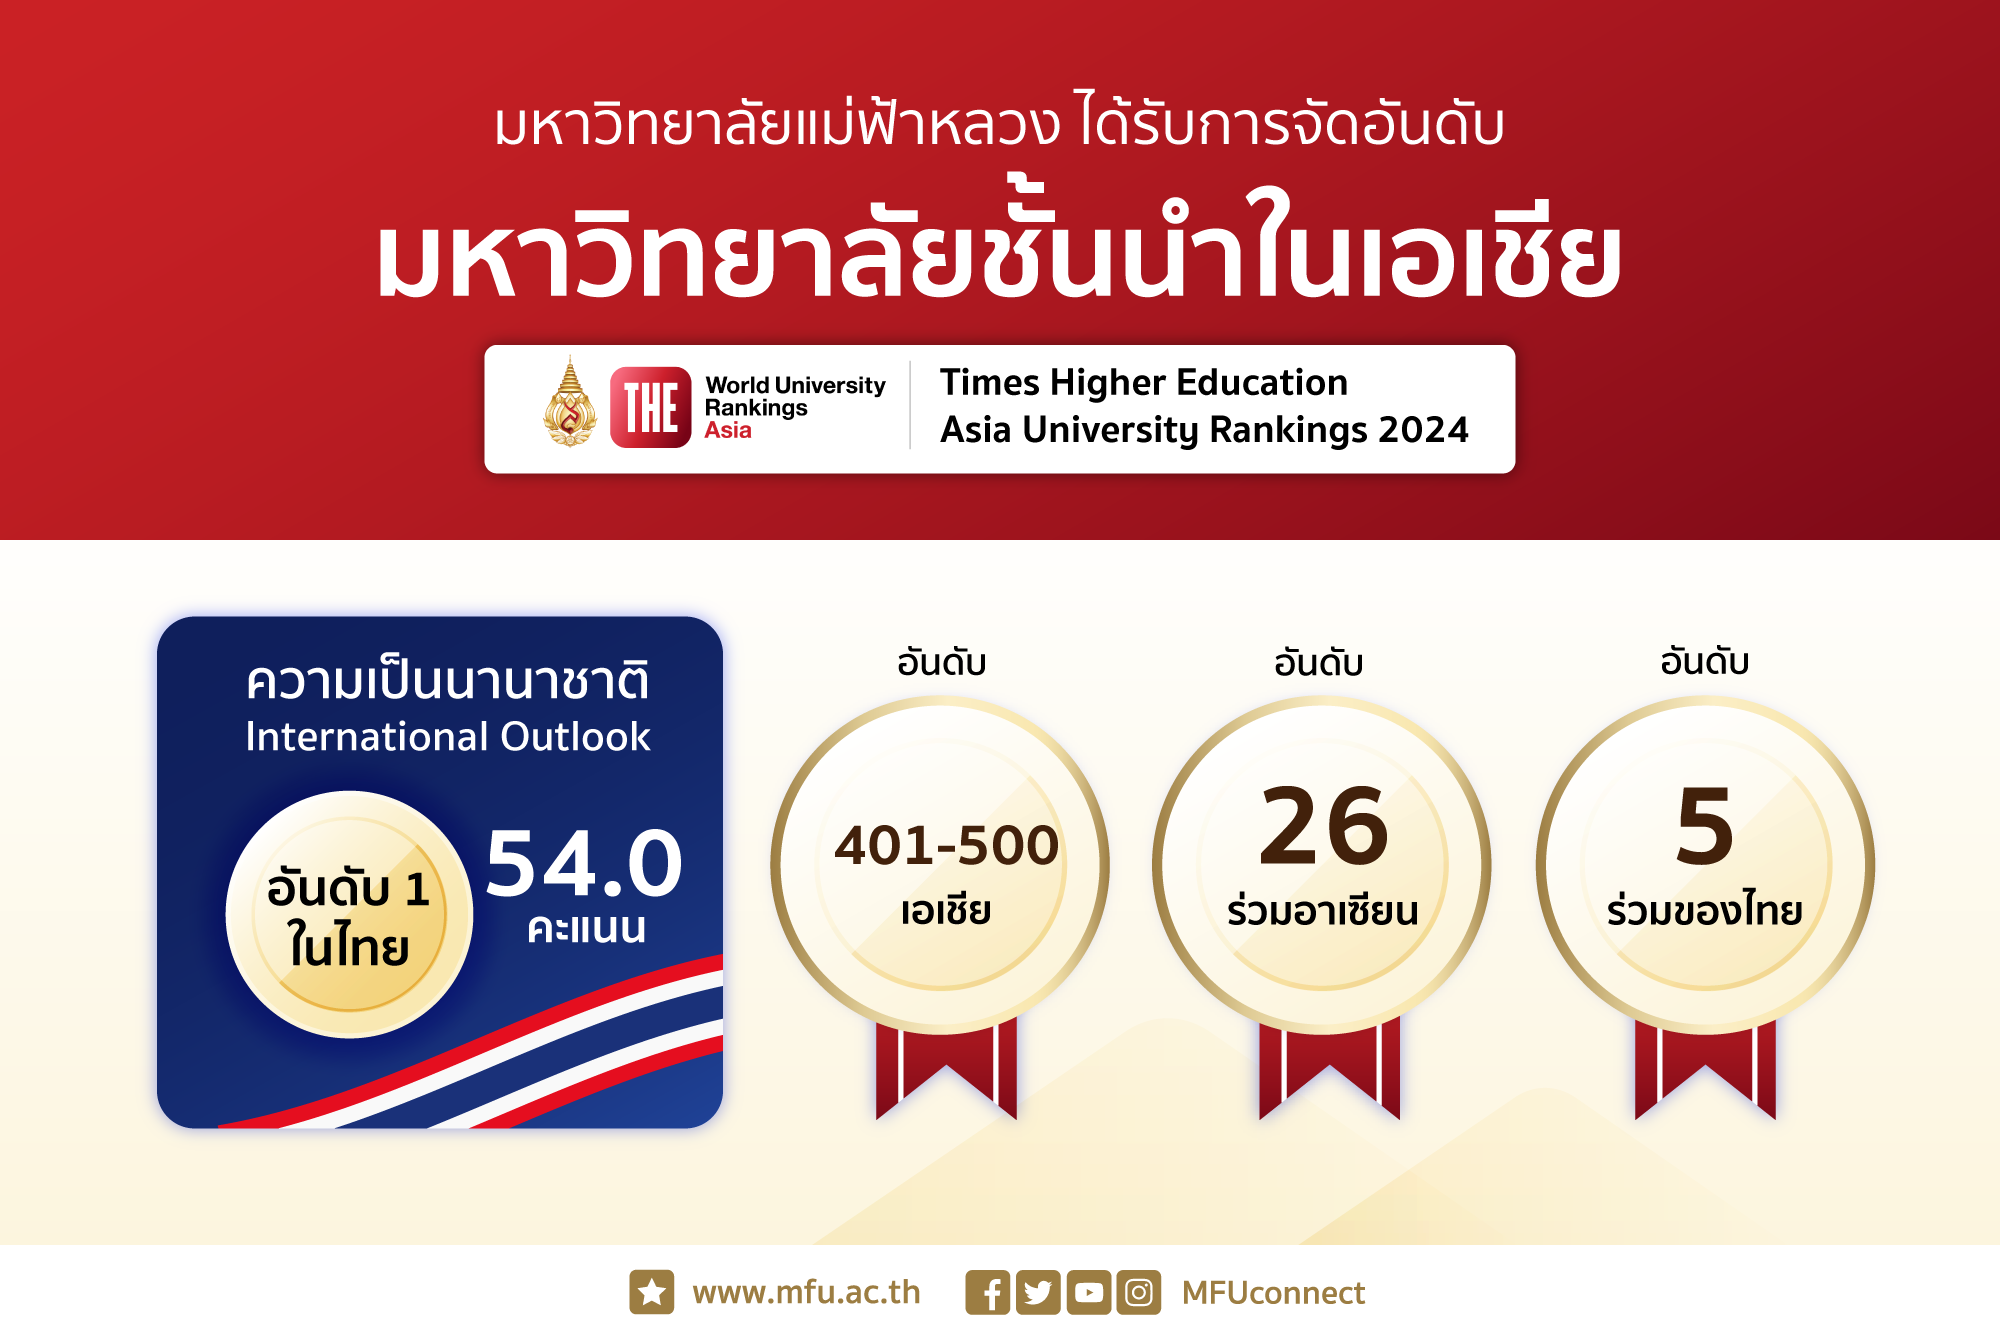 มหาวิทยาลัยแม่ฟ้าหลวง ติดอันดับ 401-500 ใน THE Asia University Rankings 2024 โดดเด่นด้านความเป็นนานาชาติ อันดับ 1 ของไทย